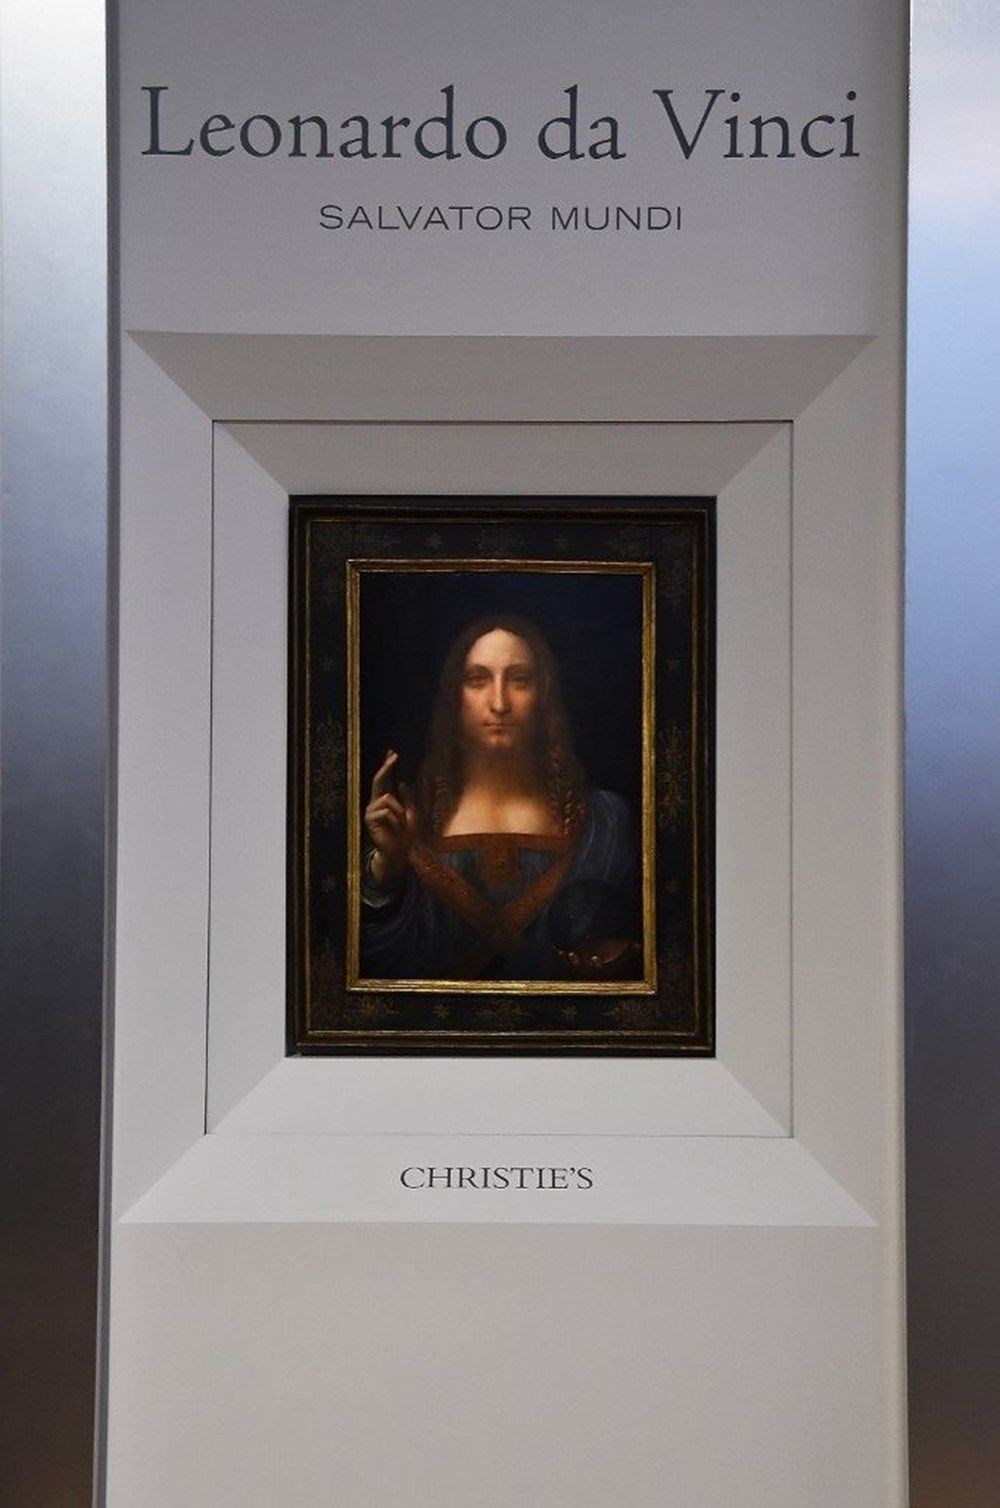 Dünyanın en pahalı tablosu olan Leonardo da Vinci’nin
Salvator Mundi’si NFT olarak satışta - 4